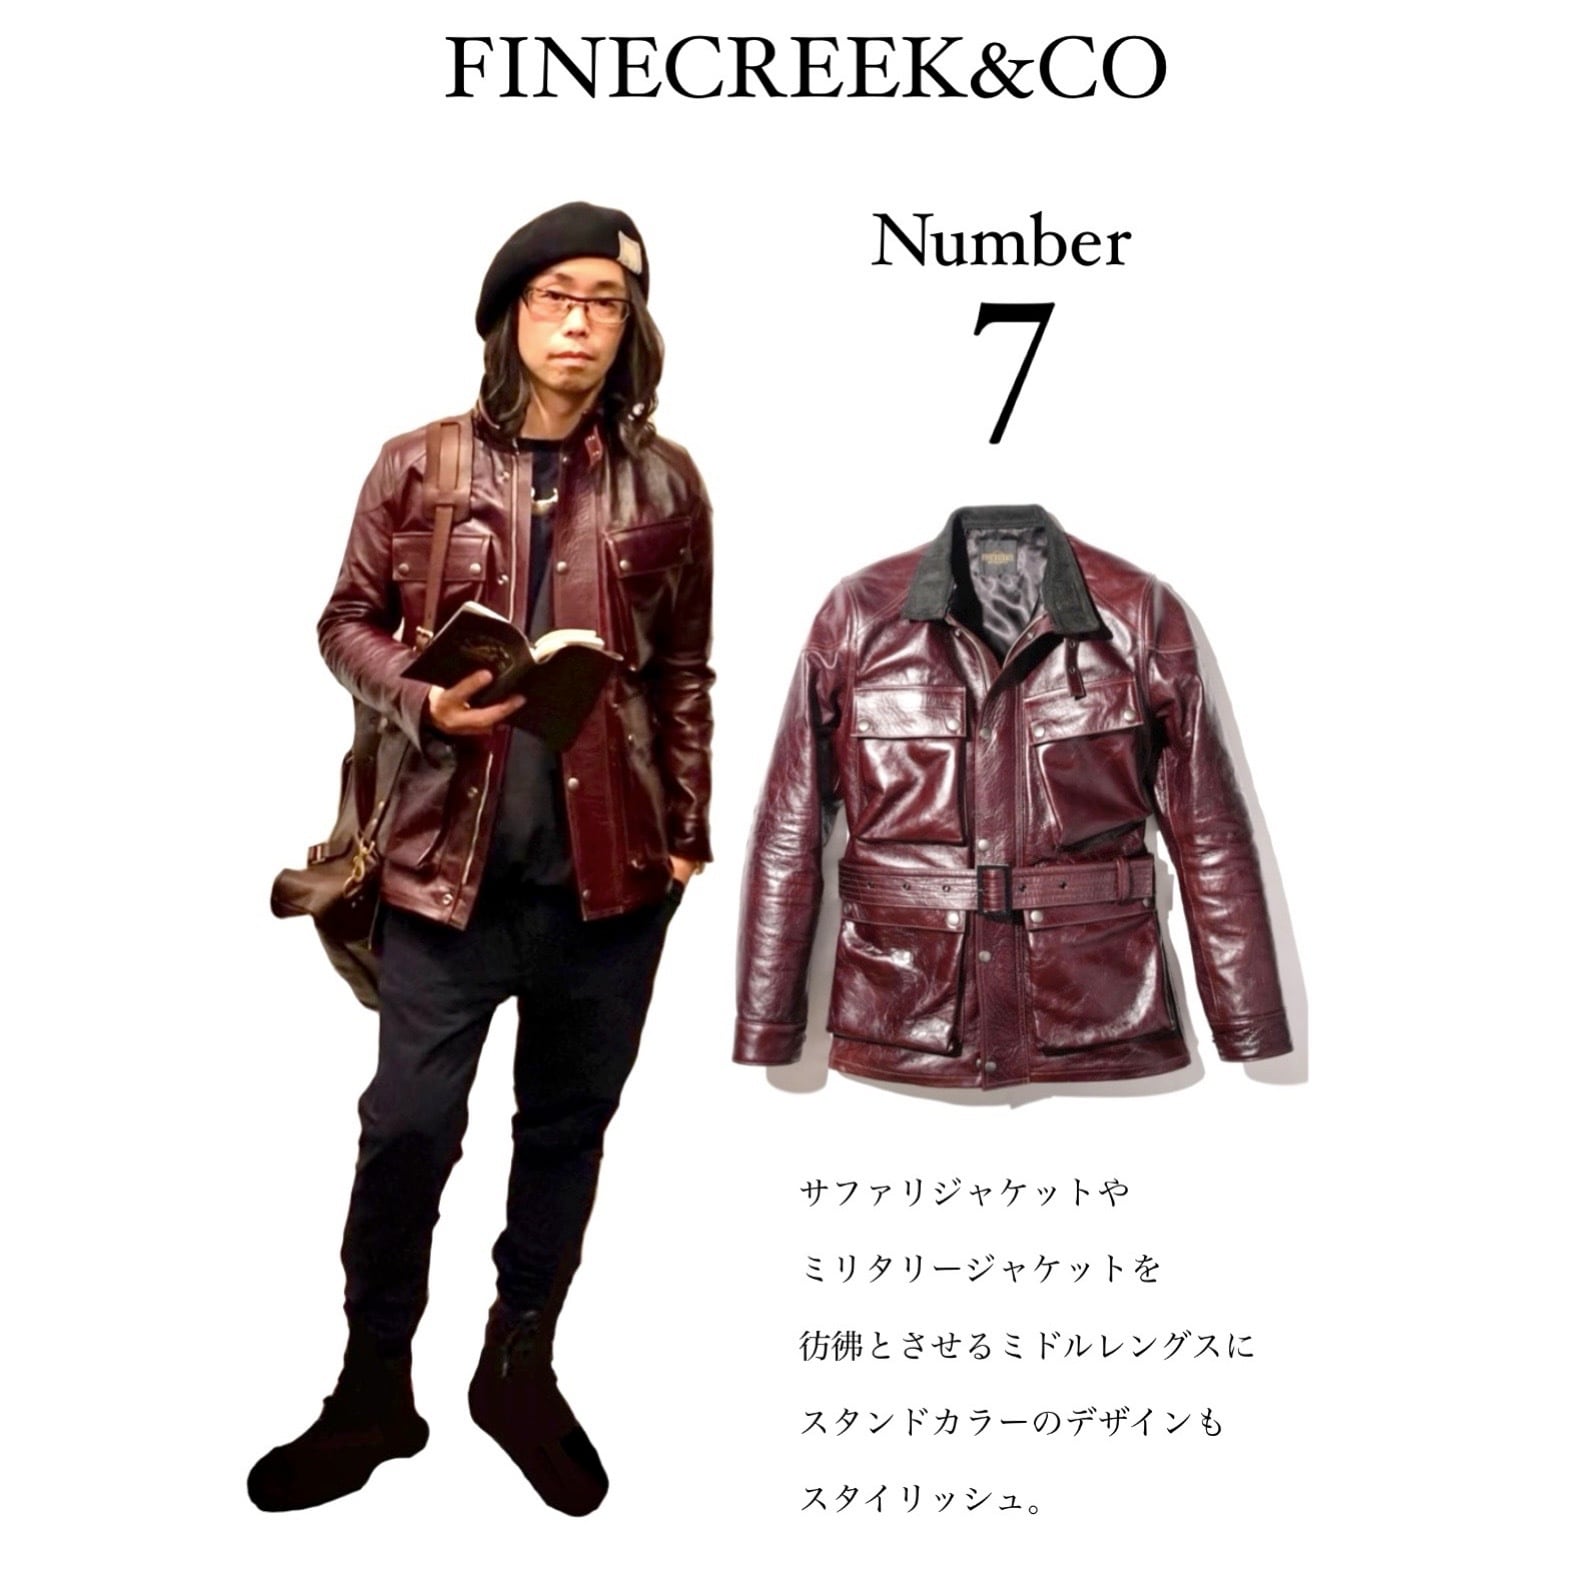 FINECREEK&CO ACCO002 Number.7 (ファインクリークアンドコー) | TiL